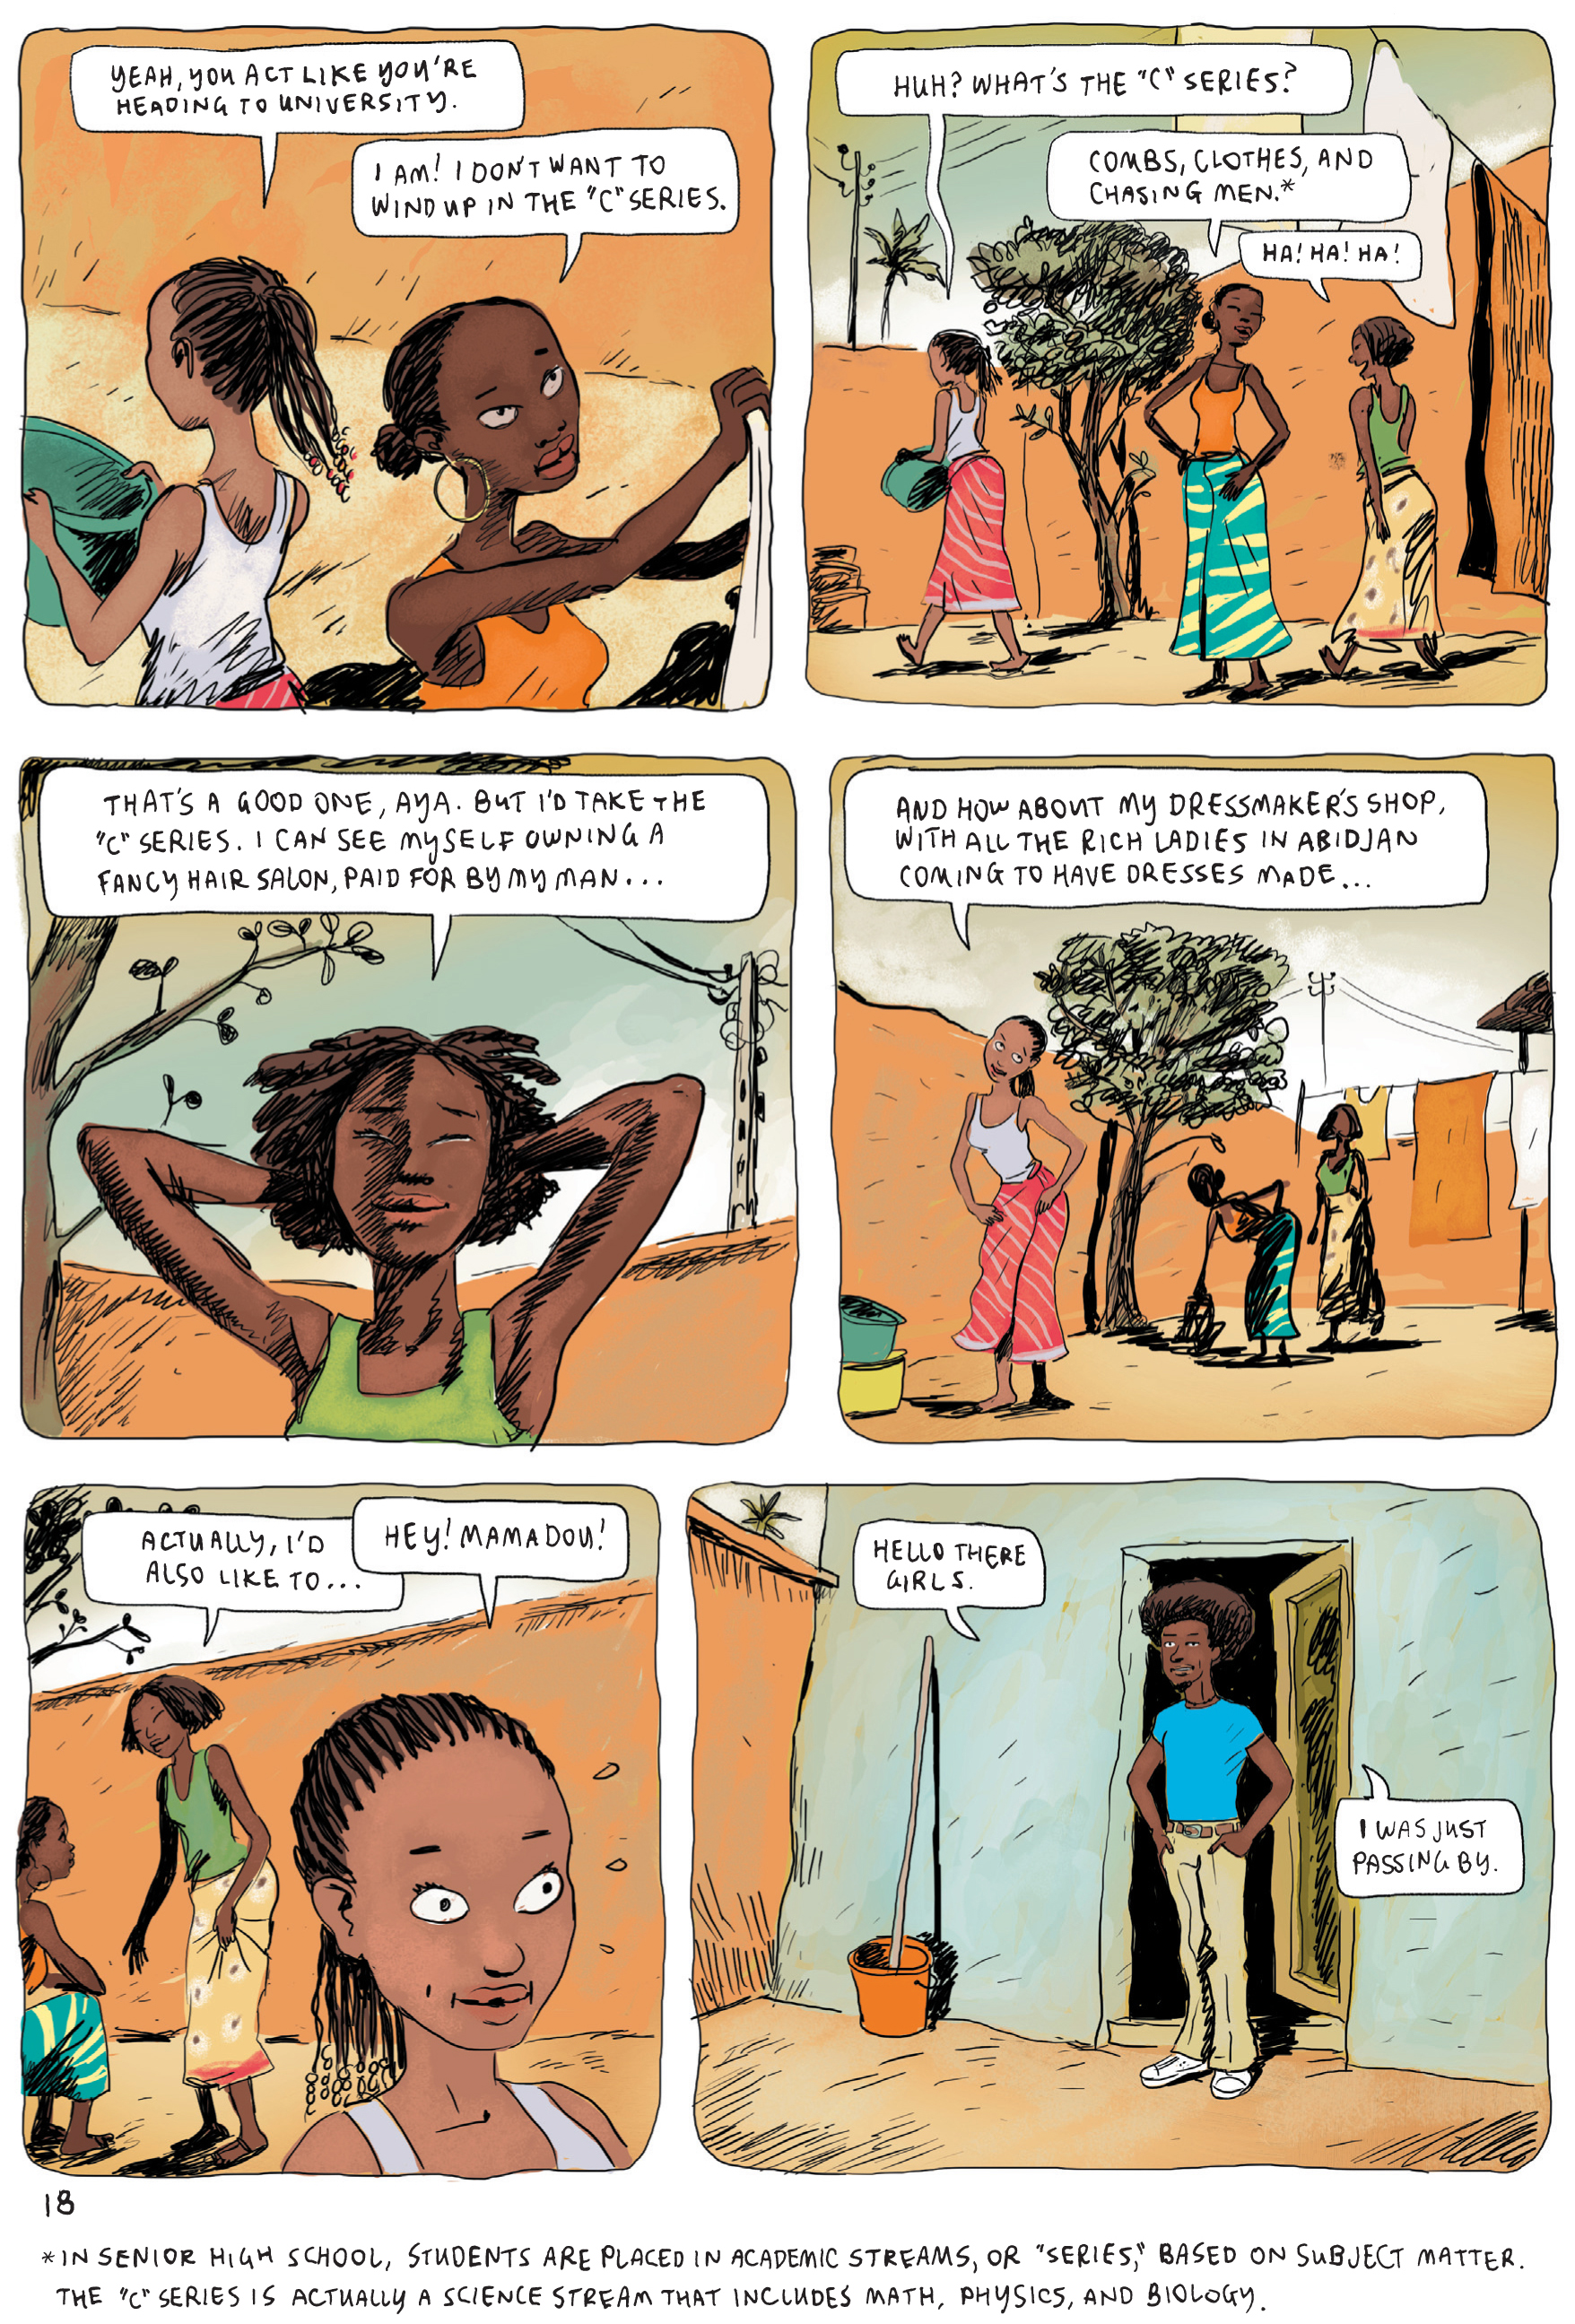 Comic in sex in Abidjan